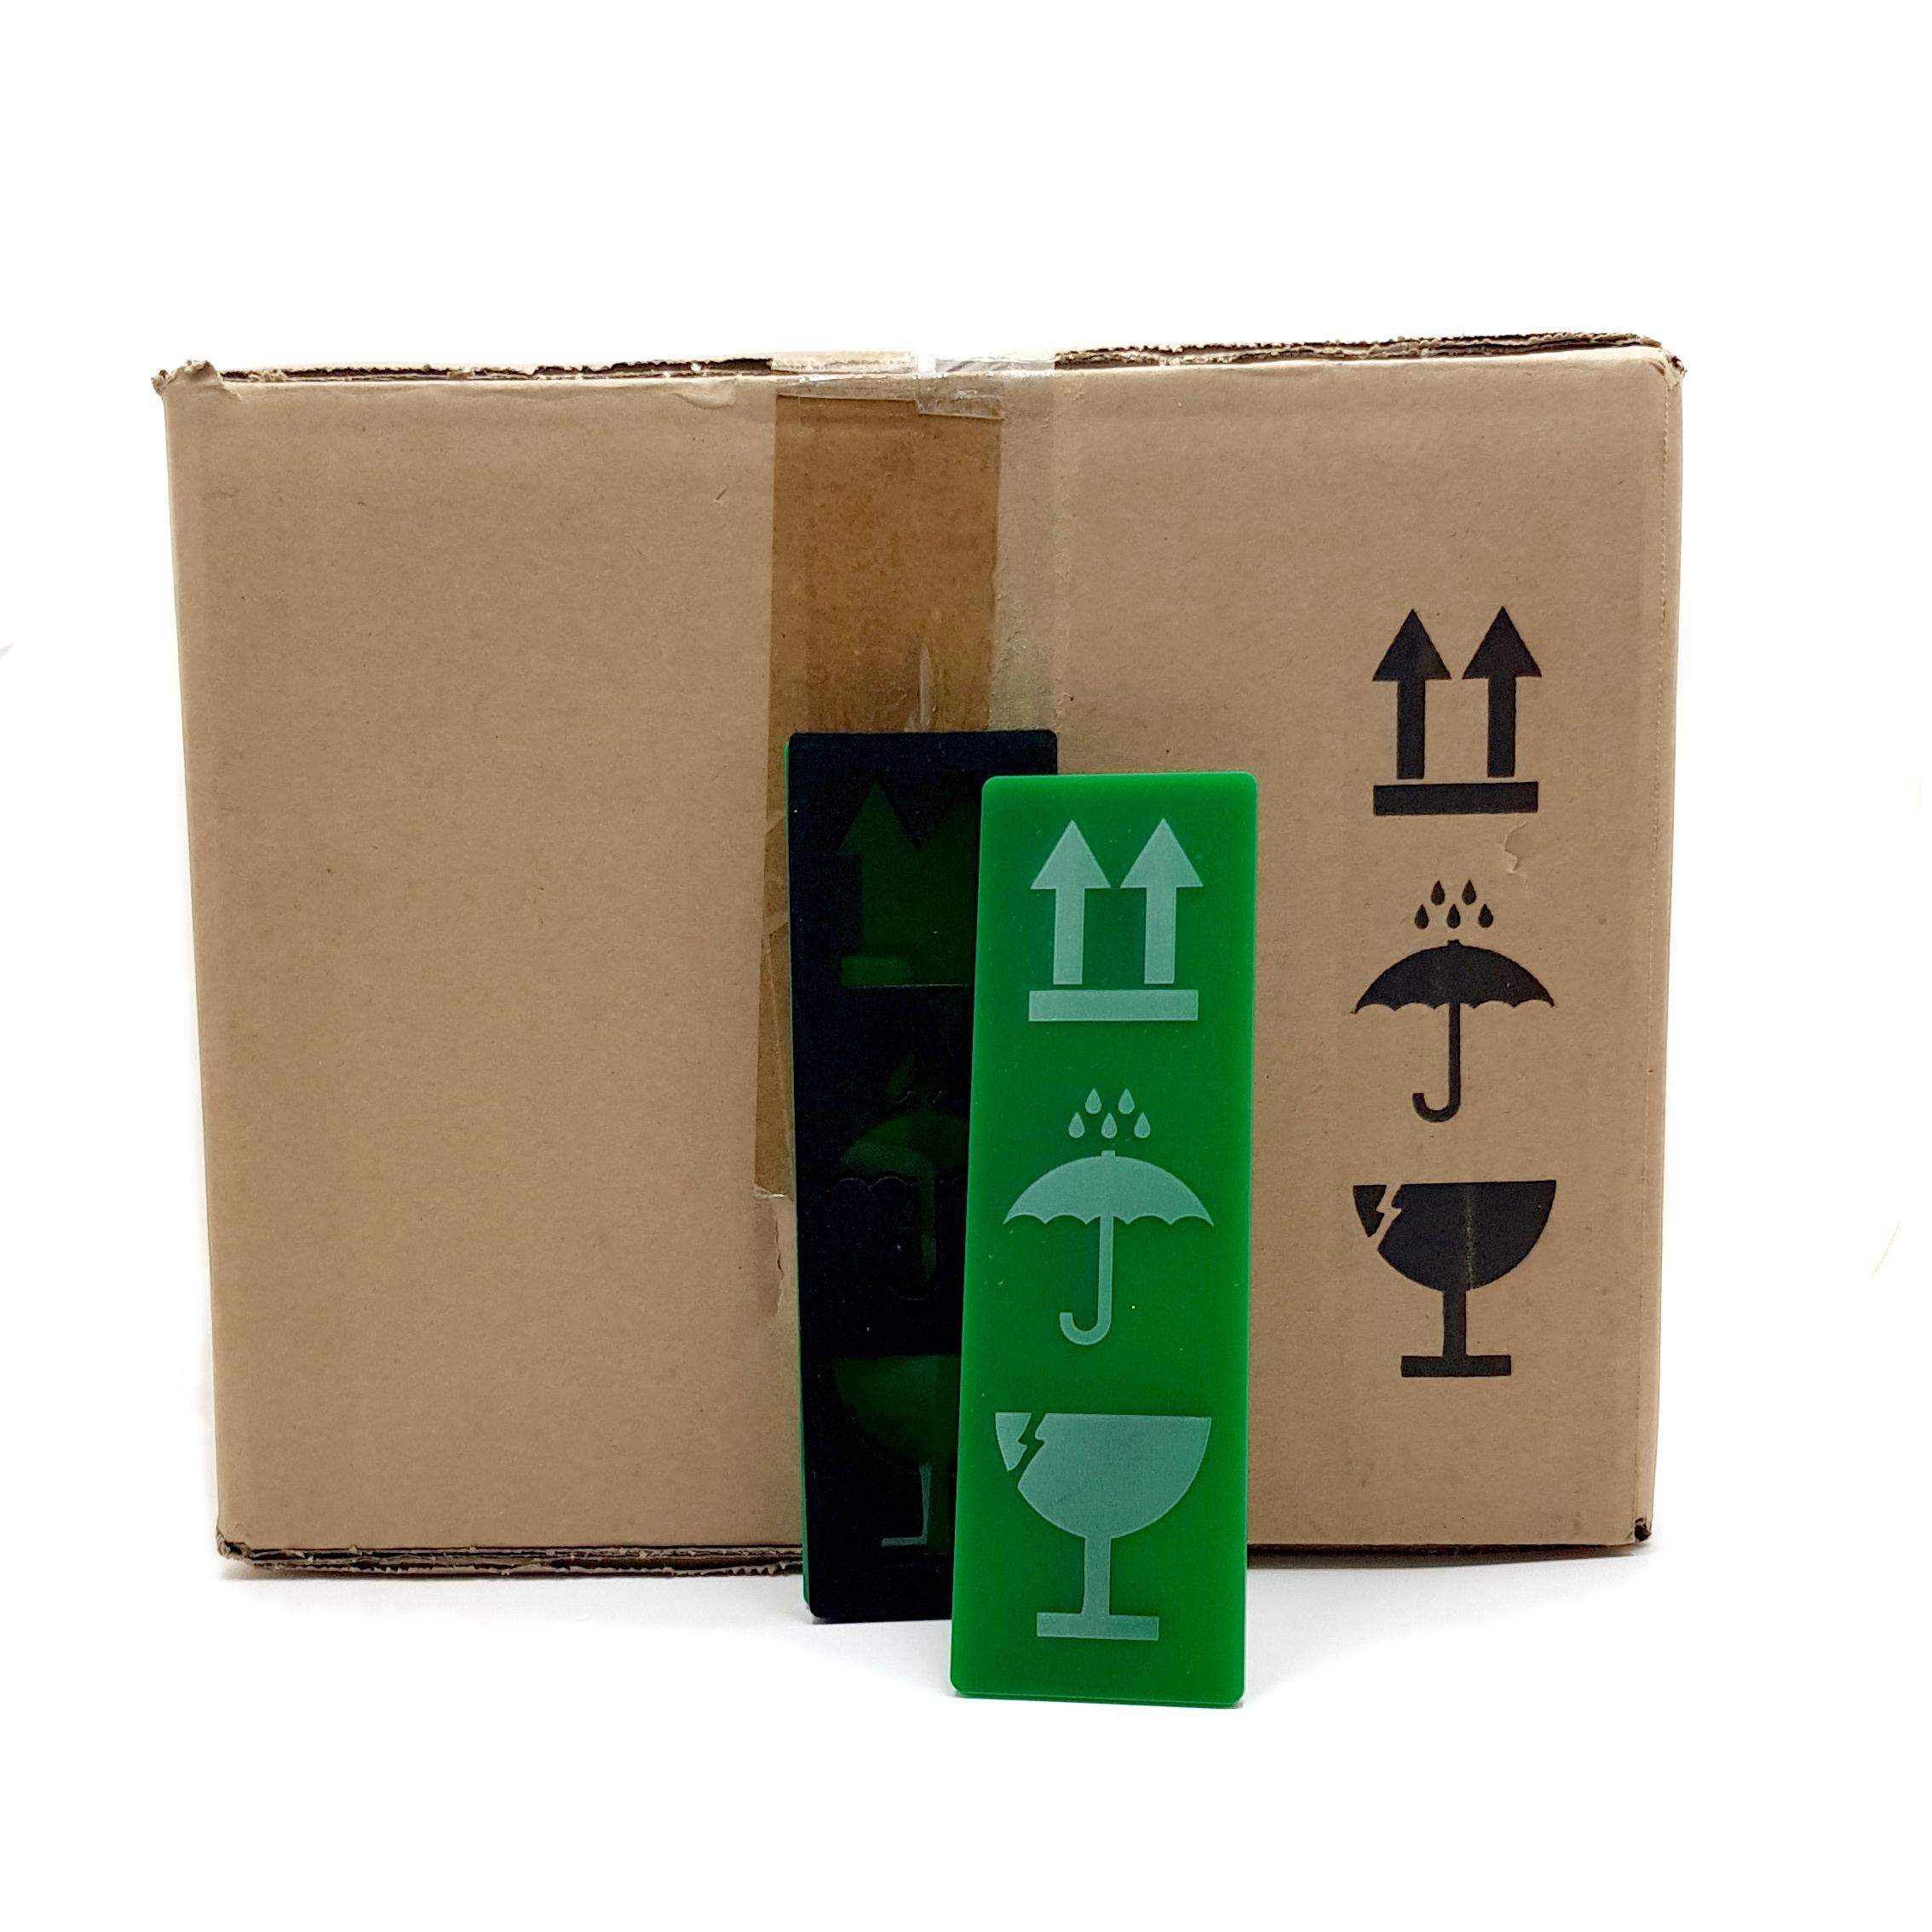 Icone simboli scatole packaging